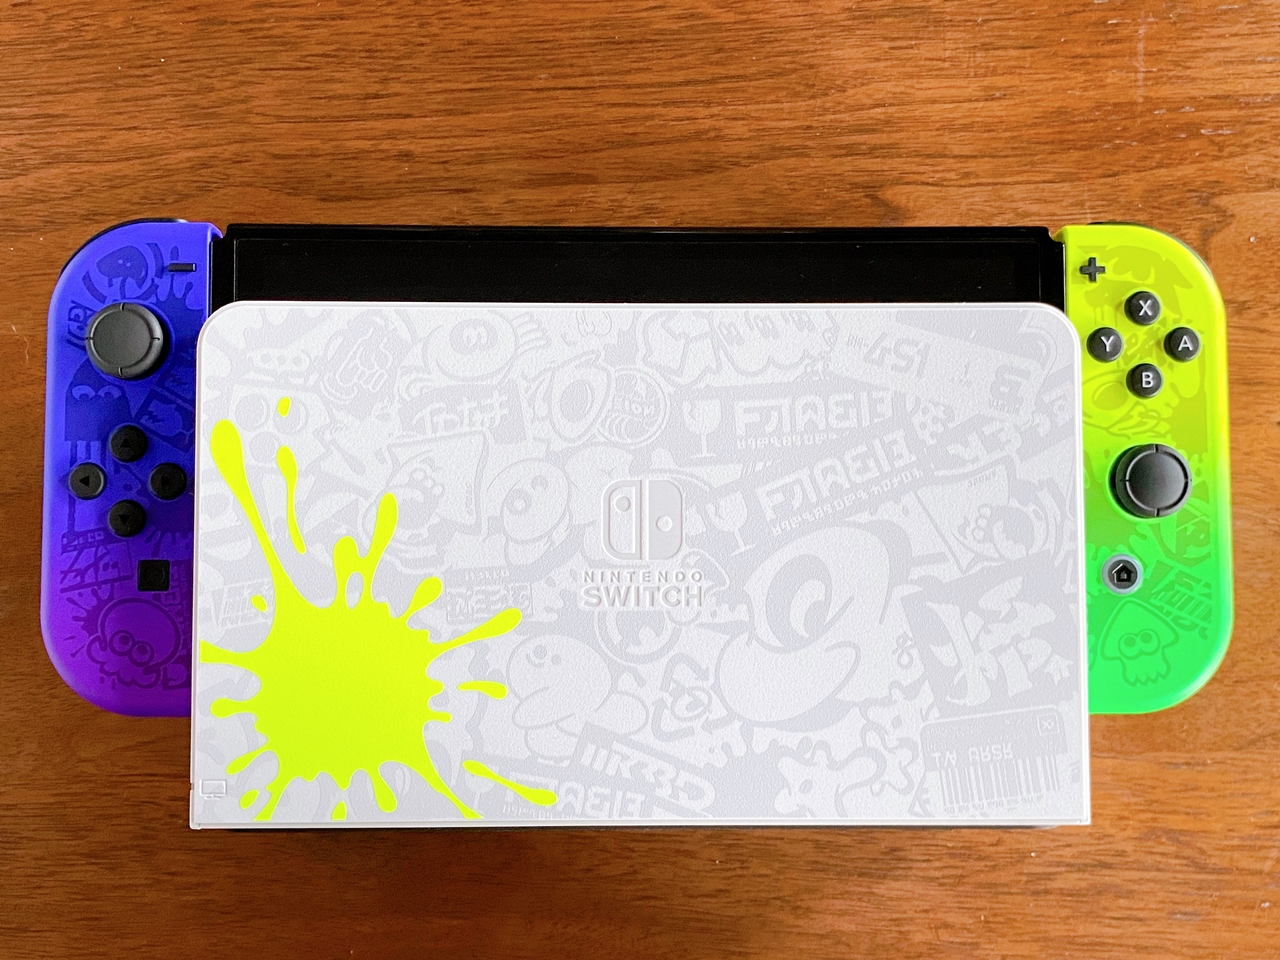 スプラトゥーン3エディション Nintendo Switch（有機ELモデル）を開封 